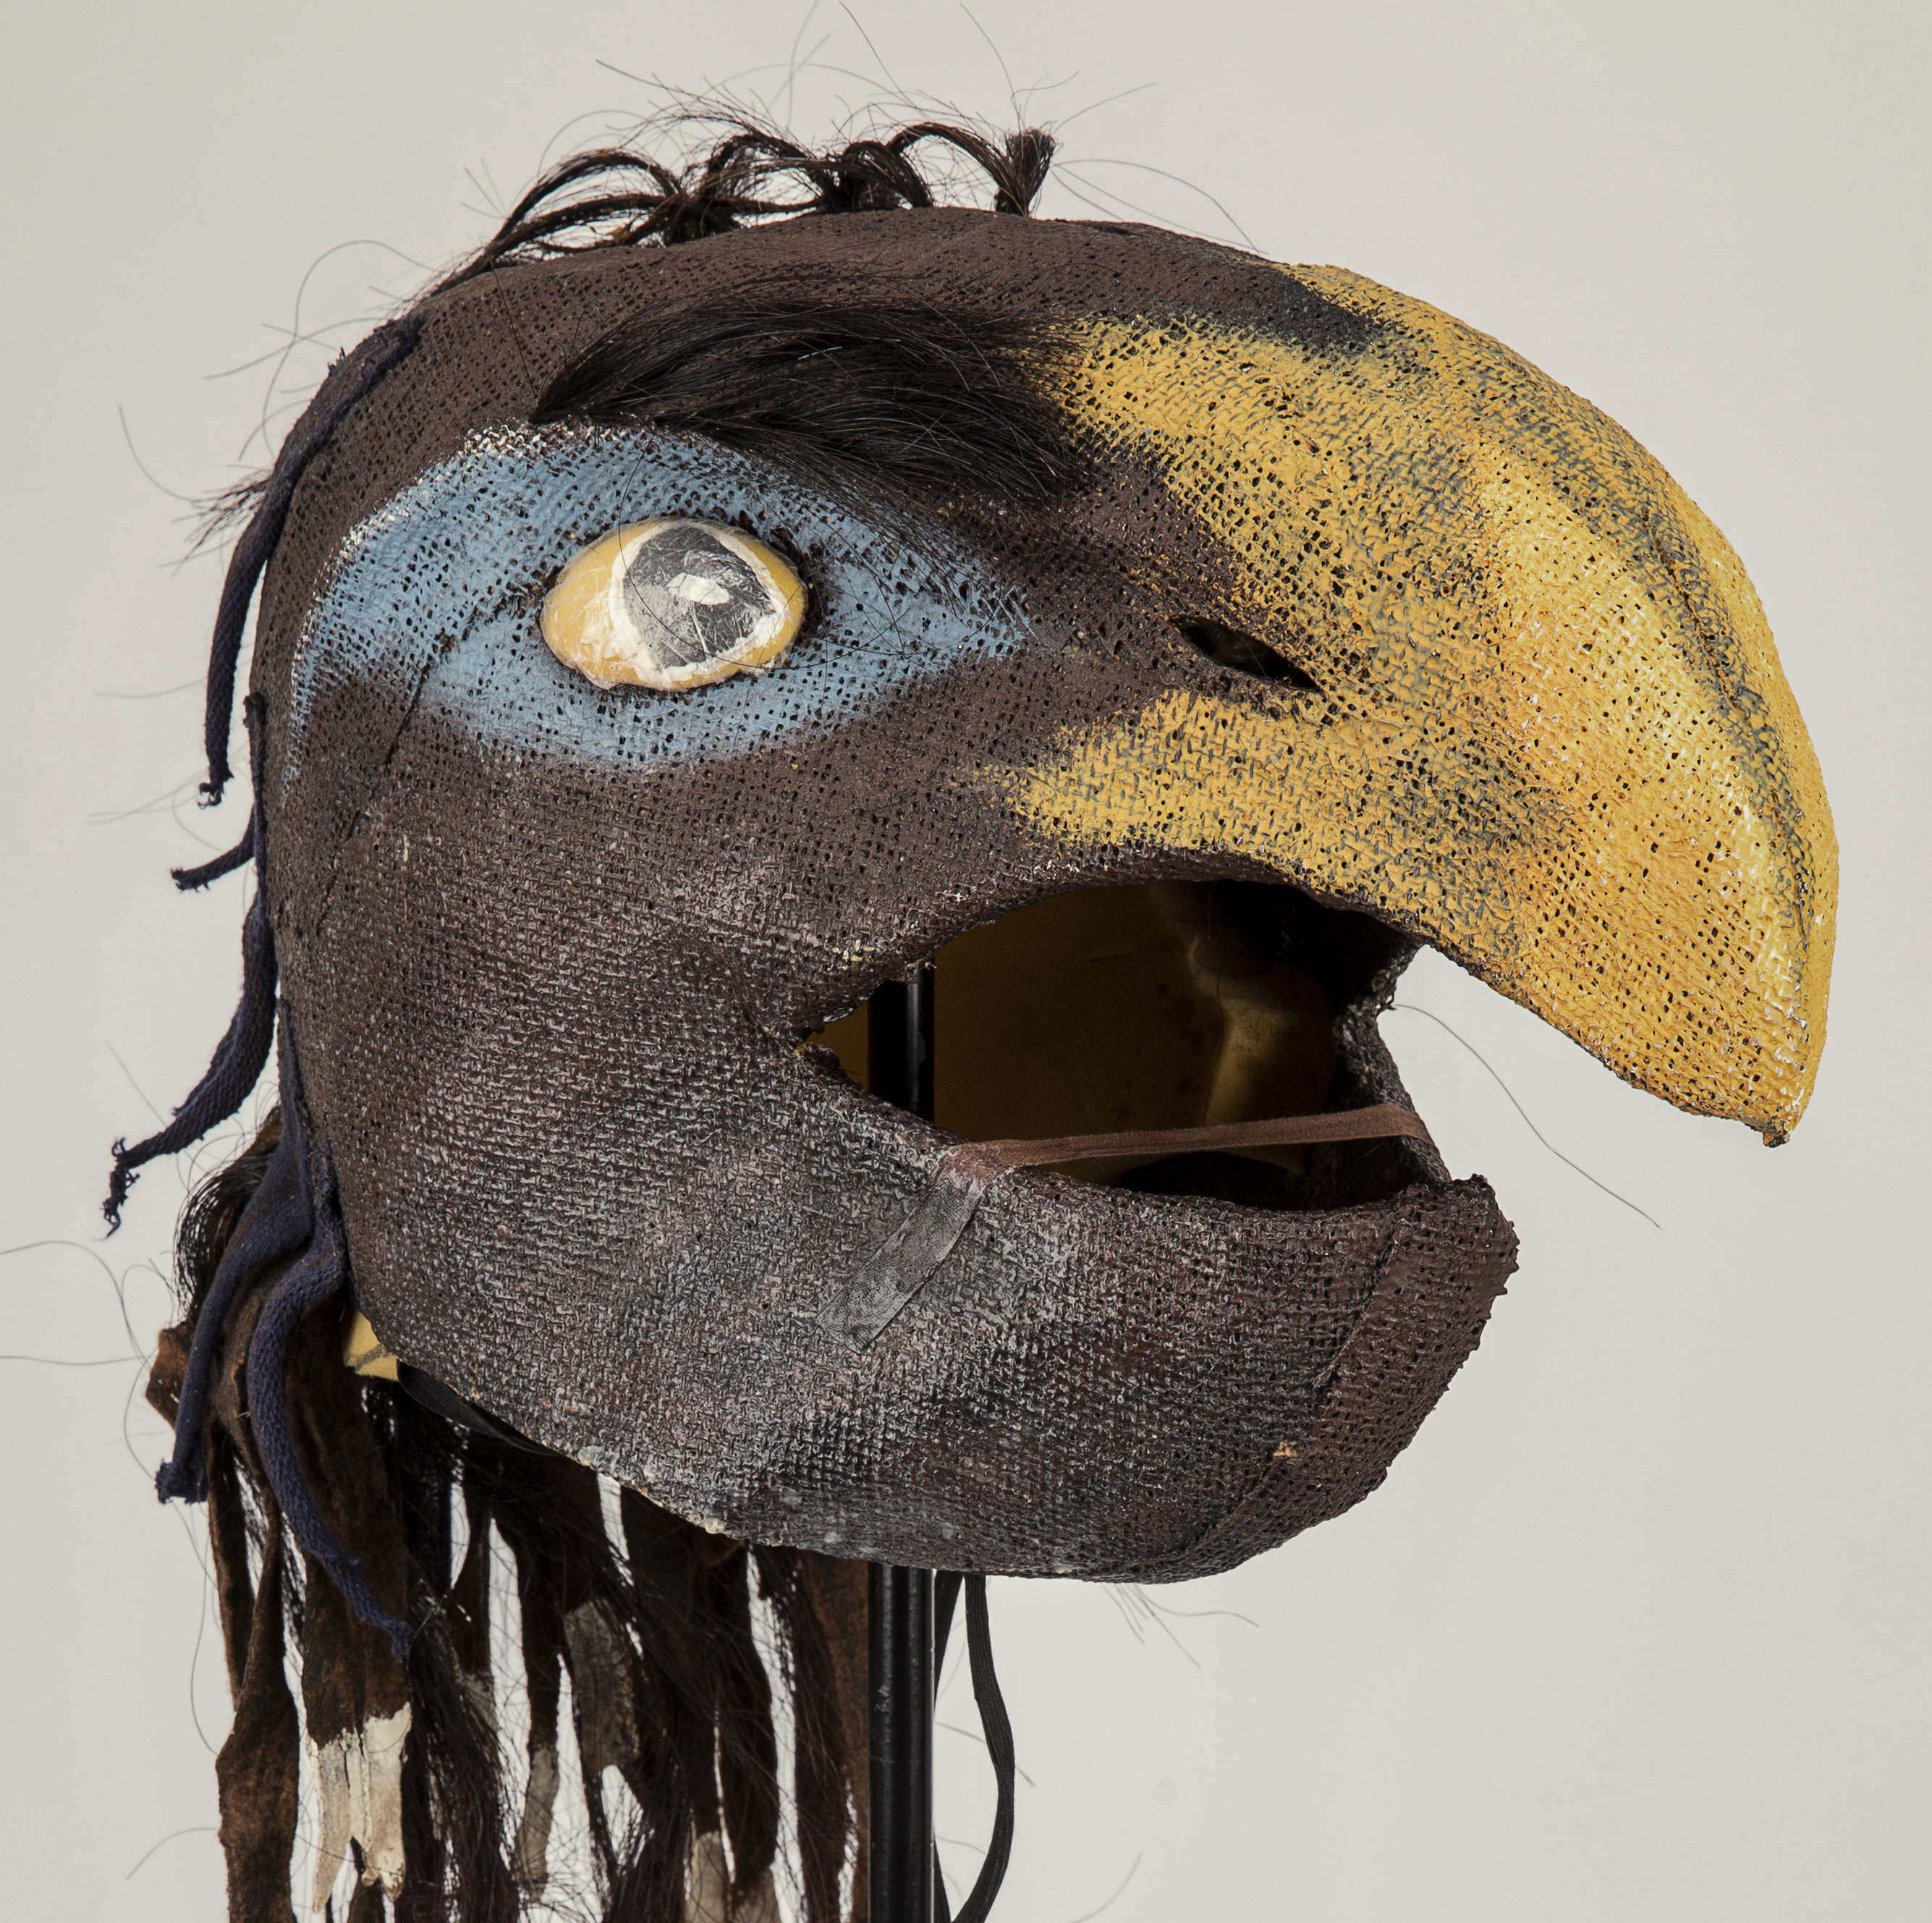 Korp. Mask till en av fyra korpar från uppsättningen "Domardansen". Av Torkel Edenborg.
Raven. Mask for one of the four ravens from the "Judge's Dance" set. | src Dansmuseet